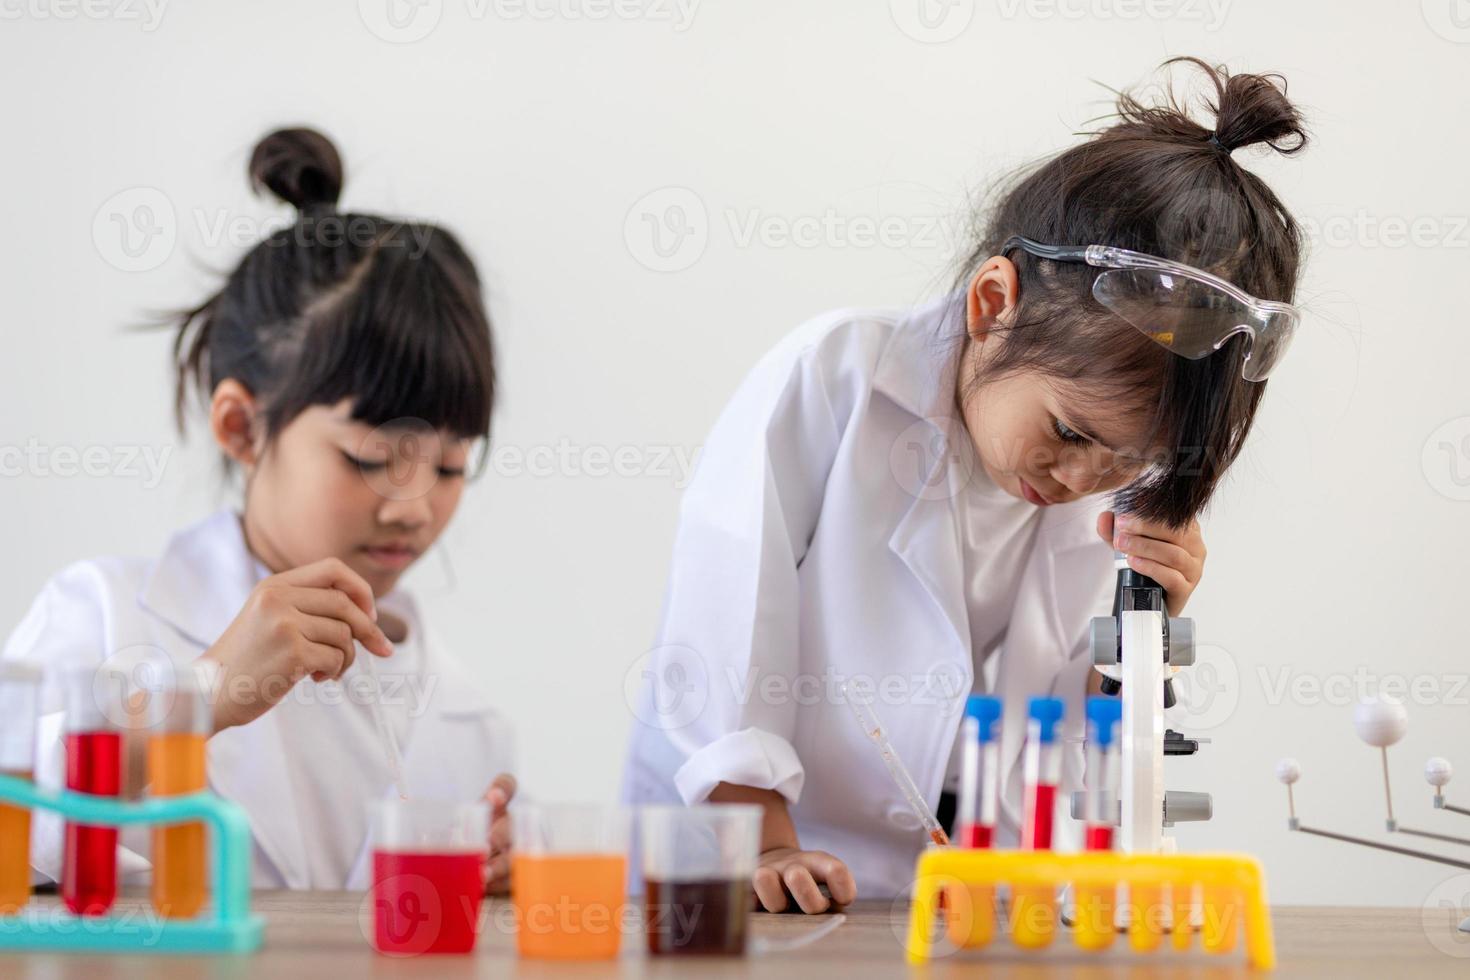 concept d'éducation, de science, de chimie et d'enfants - enfants ou étudiants avec expérience de fabrication de tubes à essai au laboratoire de l'école photo